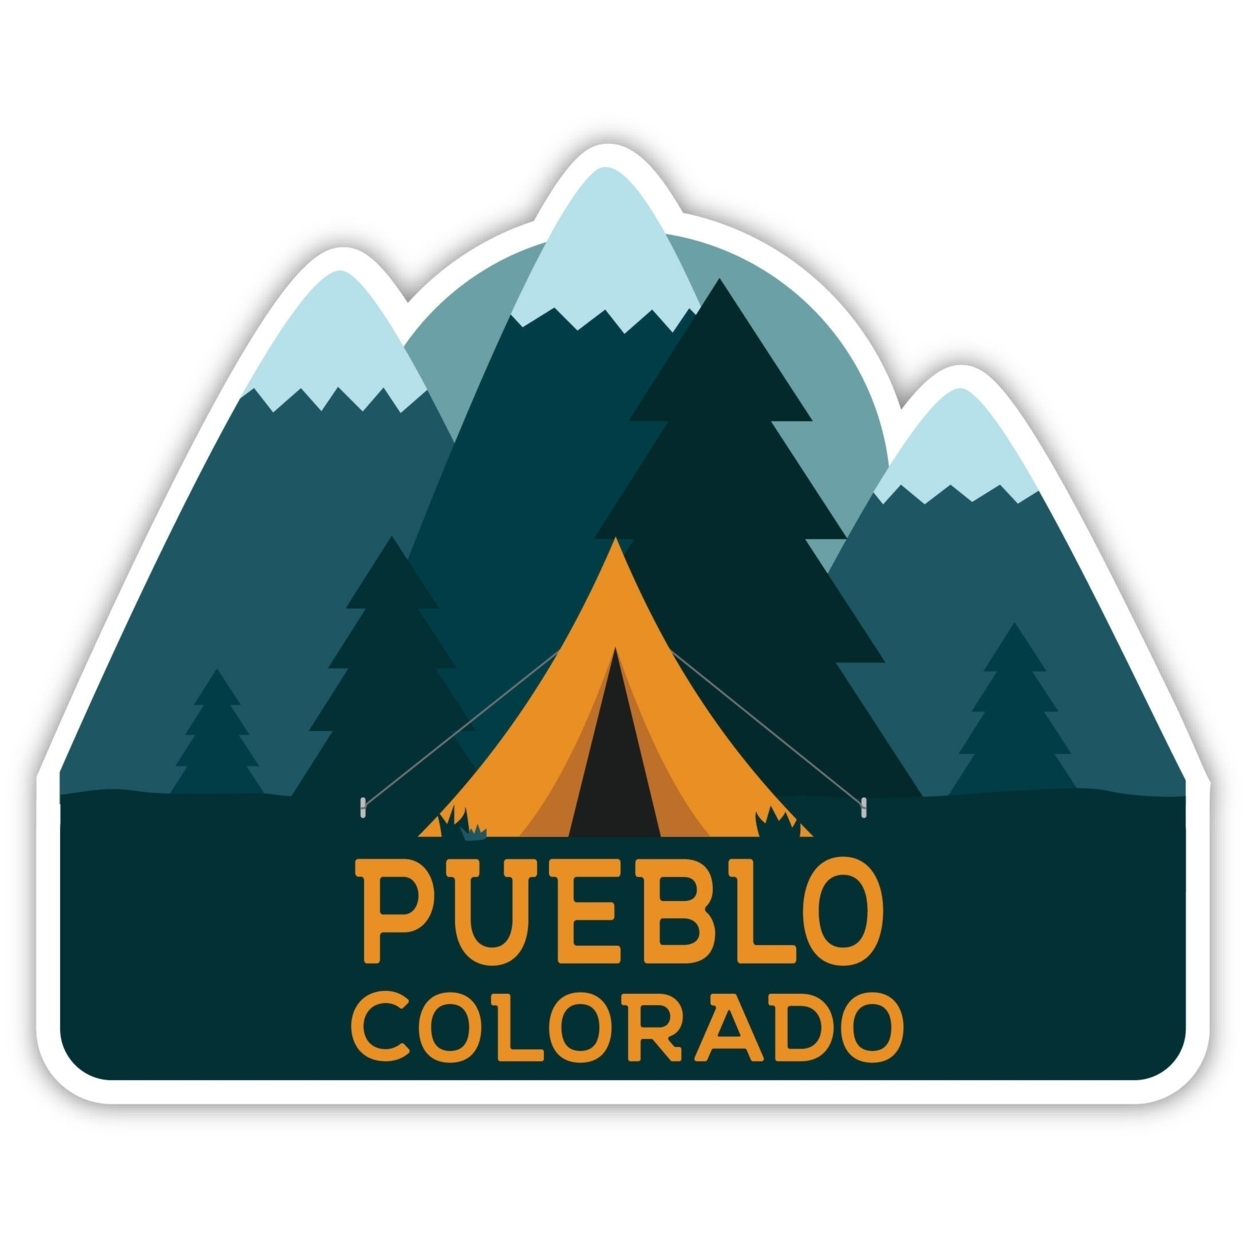 Pueblo Colorado Souvenir Decorative Stickers (Choose Theme And Size) - Single Unit, 4-Inch, Tent